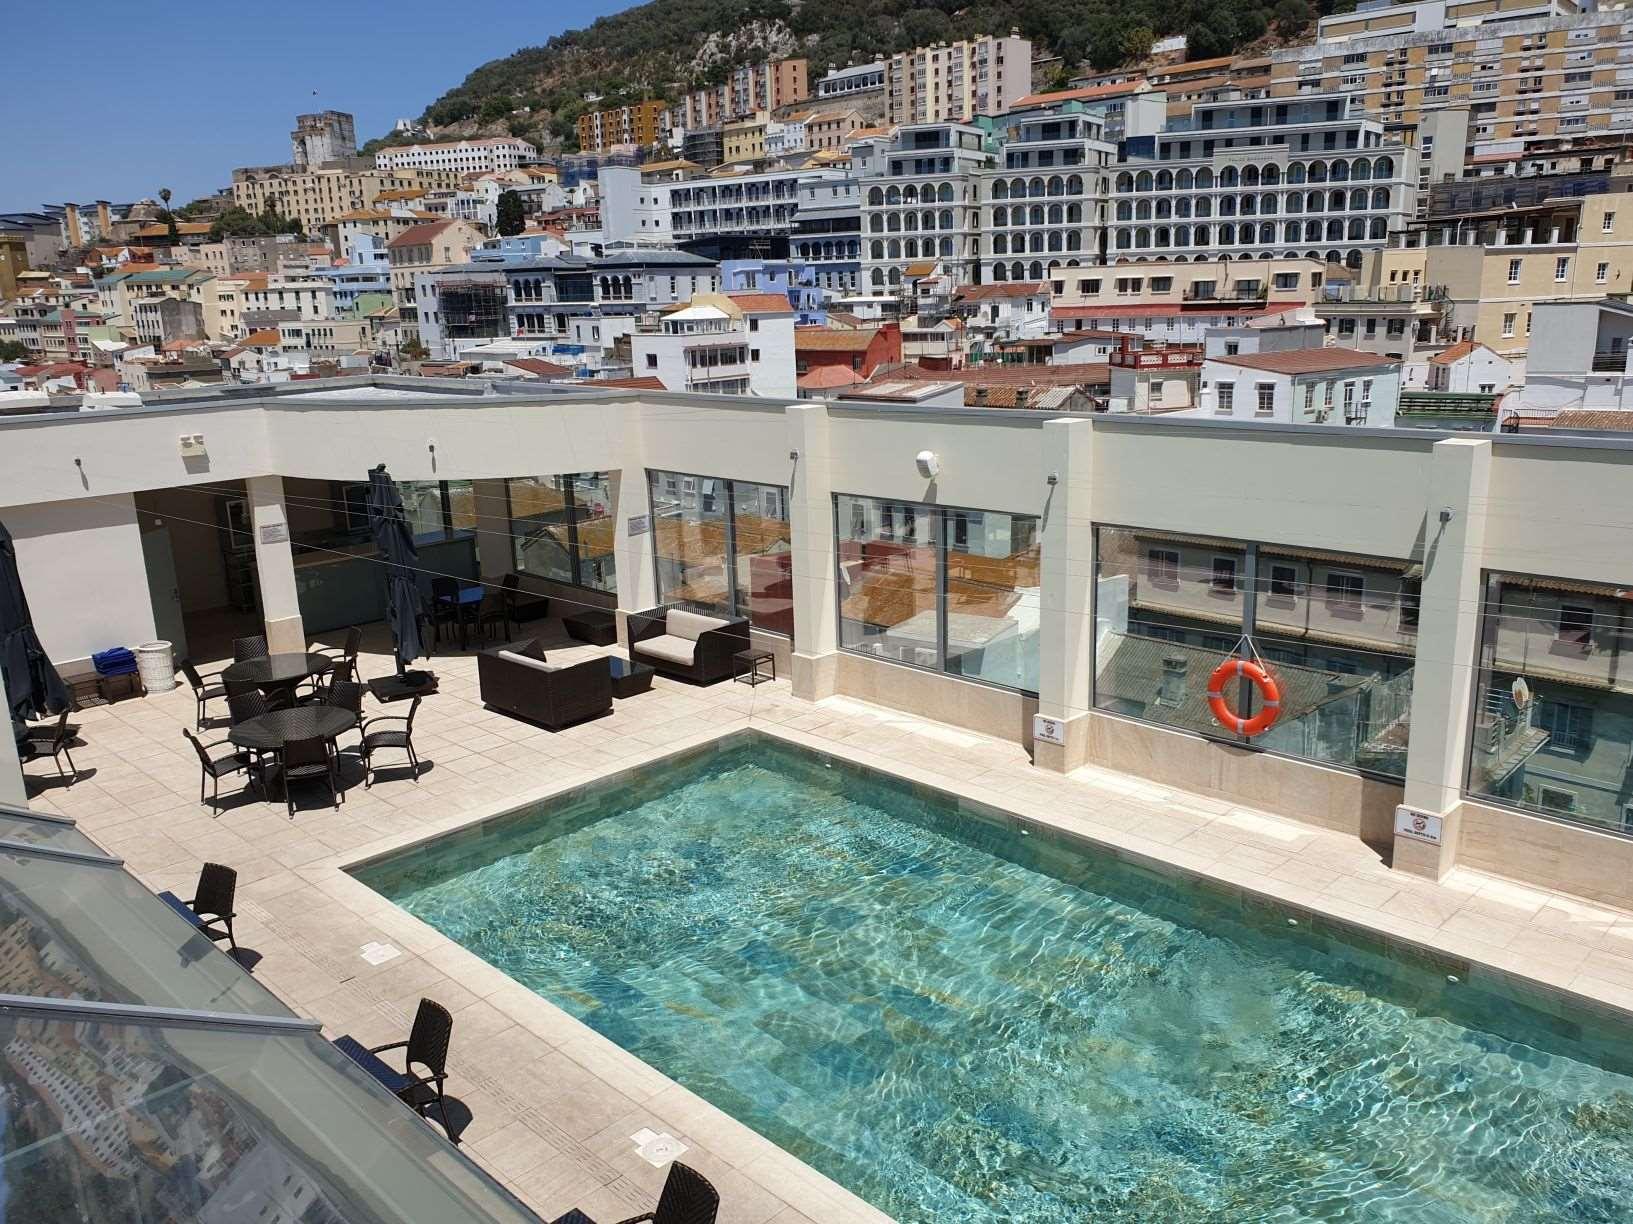 The Eliott Hotel Gibraltar